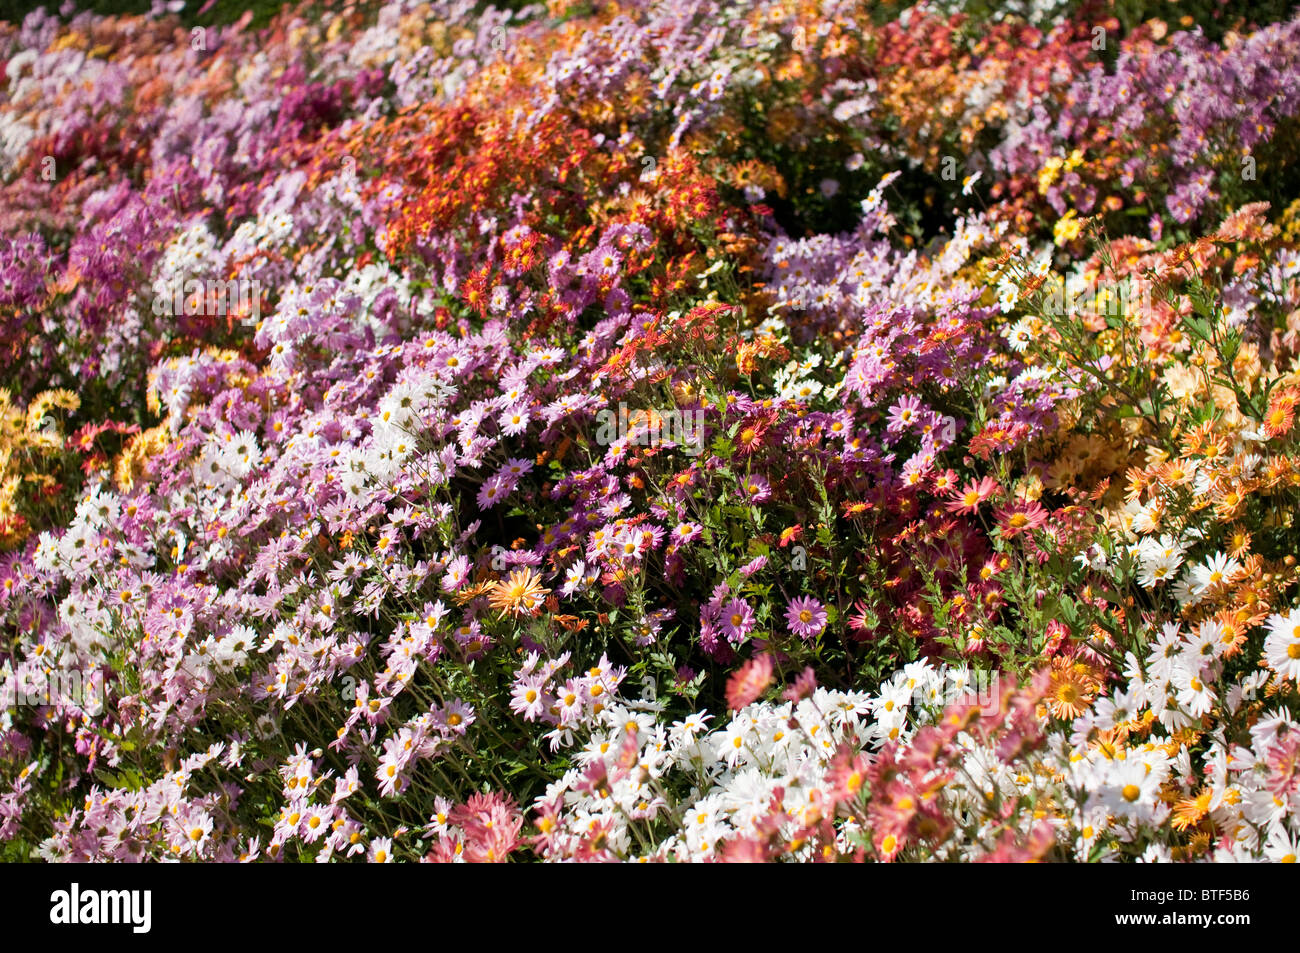 Beet voller bunte Chrysanthemen (Mums) im Oktober, ein beliebtes fallen Blume in den Vereinigten Staaten. Stockfoto